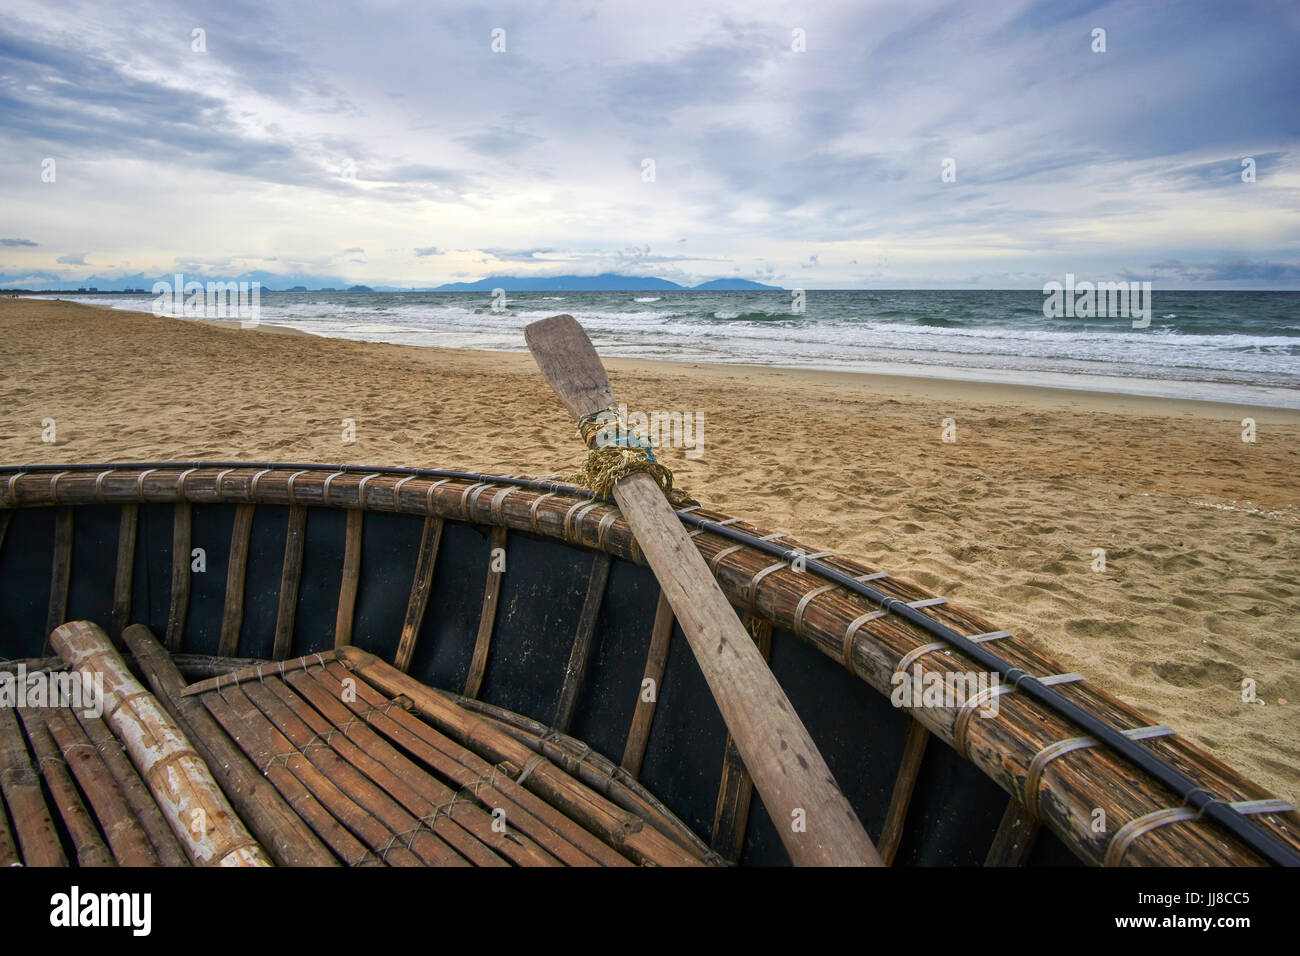 Soirée orageuse à la plage avec des nuages et des vagues. Bateau de coco traditionnel vietnamien à l'avant-plan. Hoi An, la plage de An Bang, Vietnam. Banque D'Images